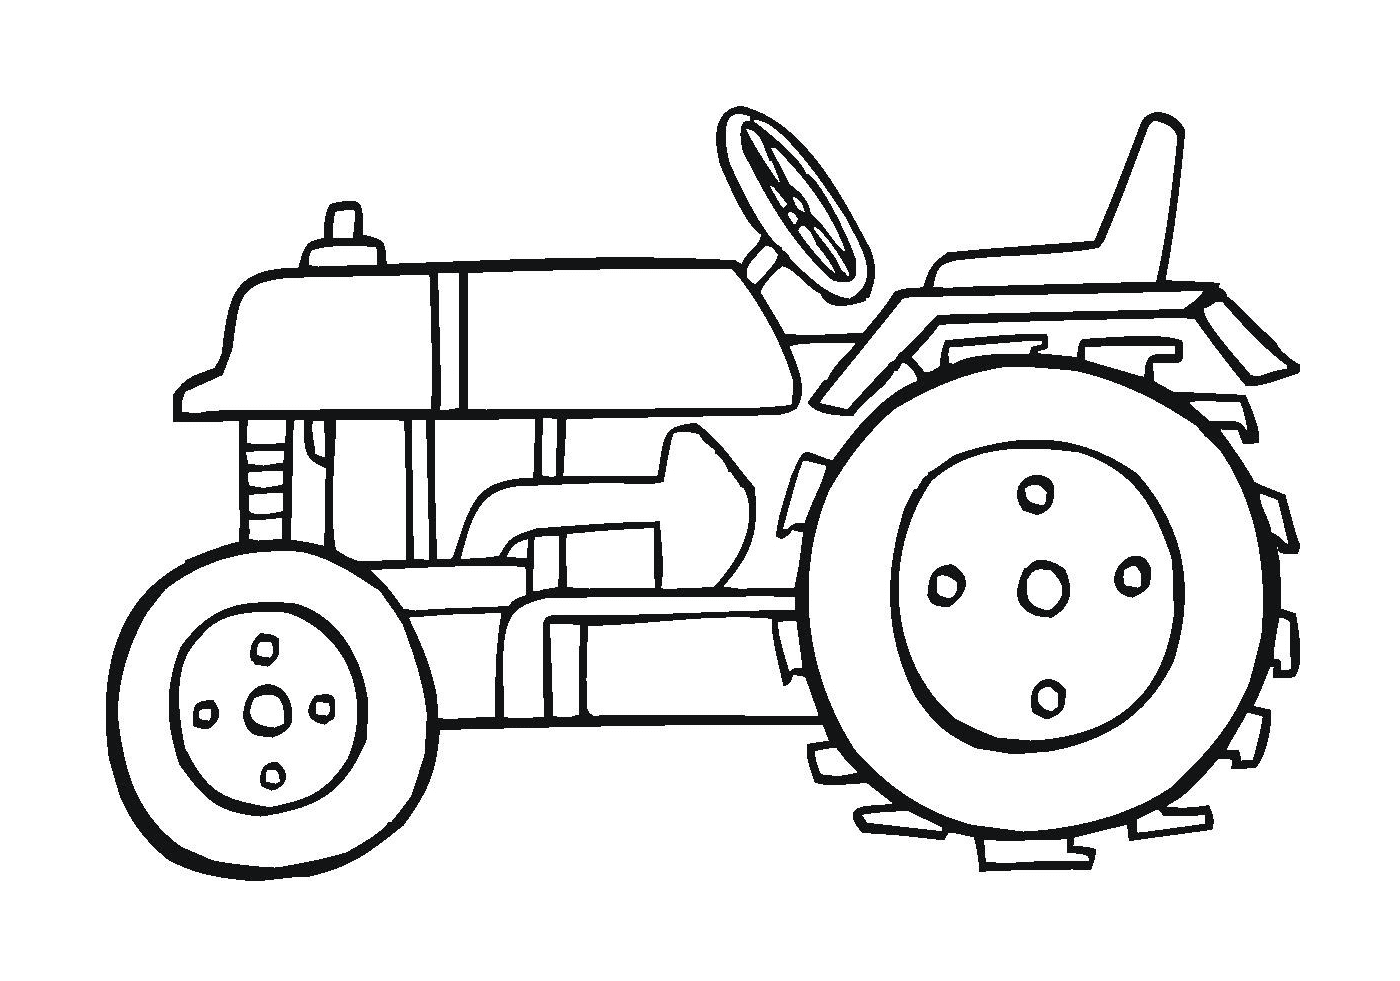   Tracteur puissant, machine agricole efficace 